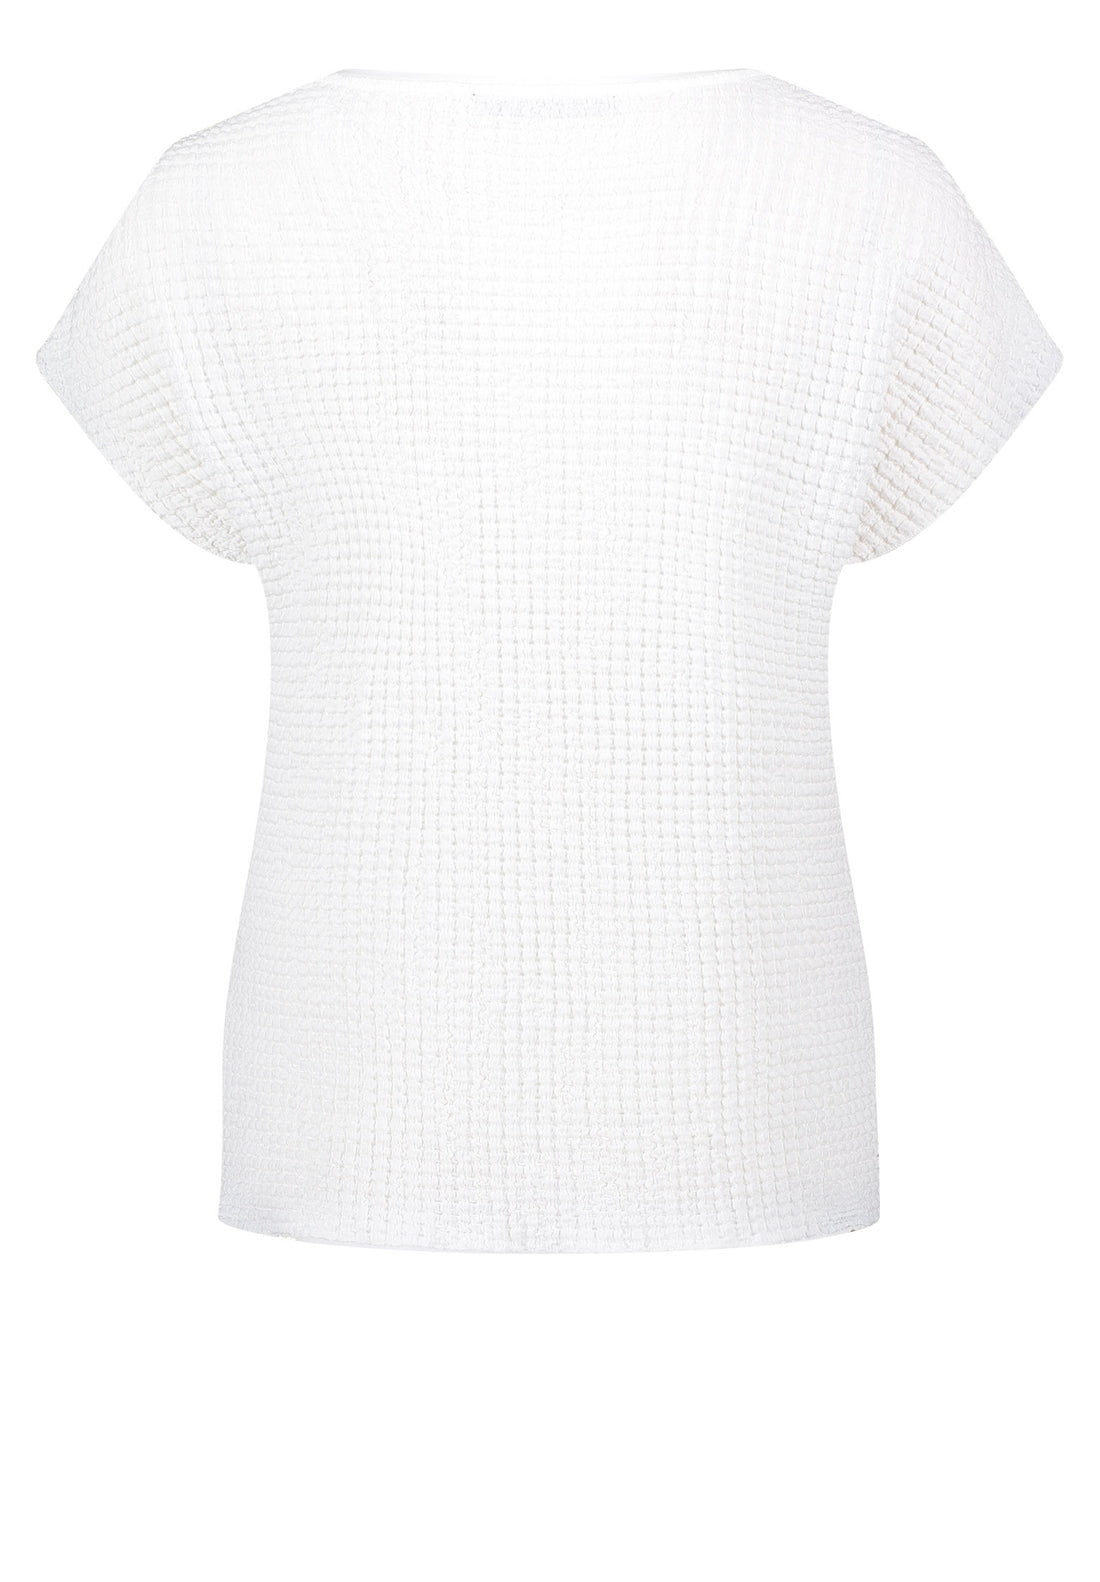 Short Sleeve Textured T-Shirt_2068-2559_1014_02